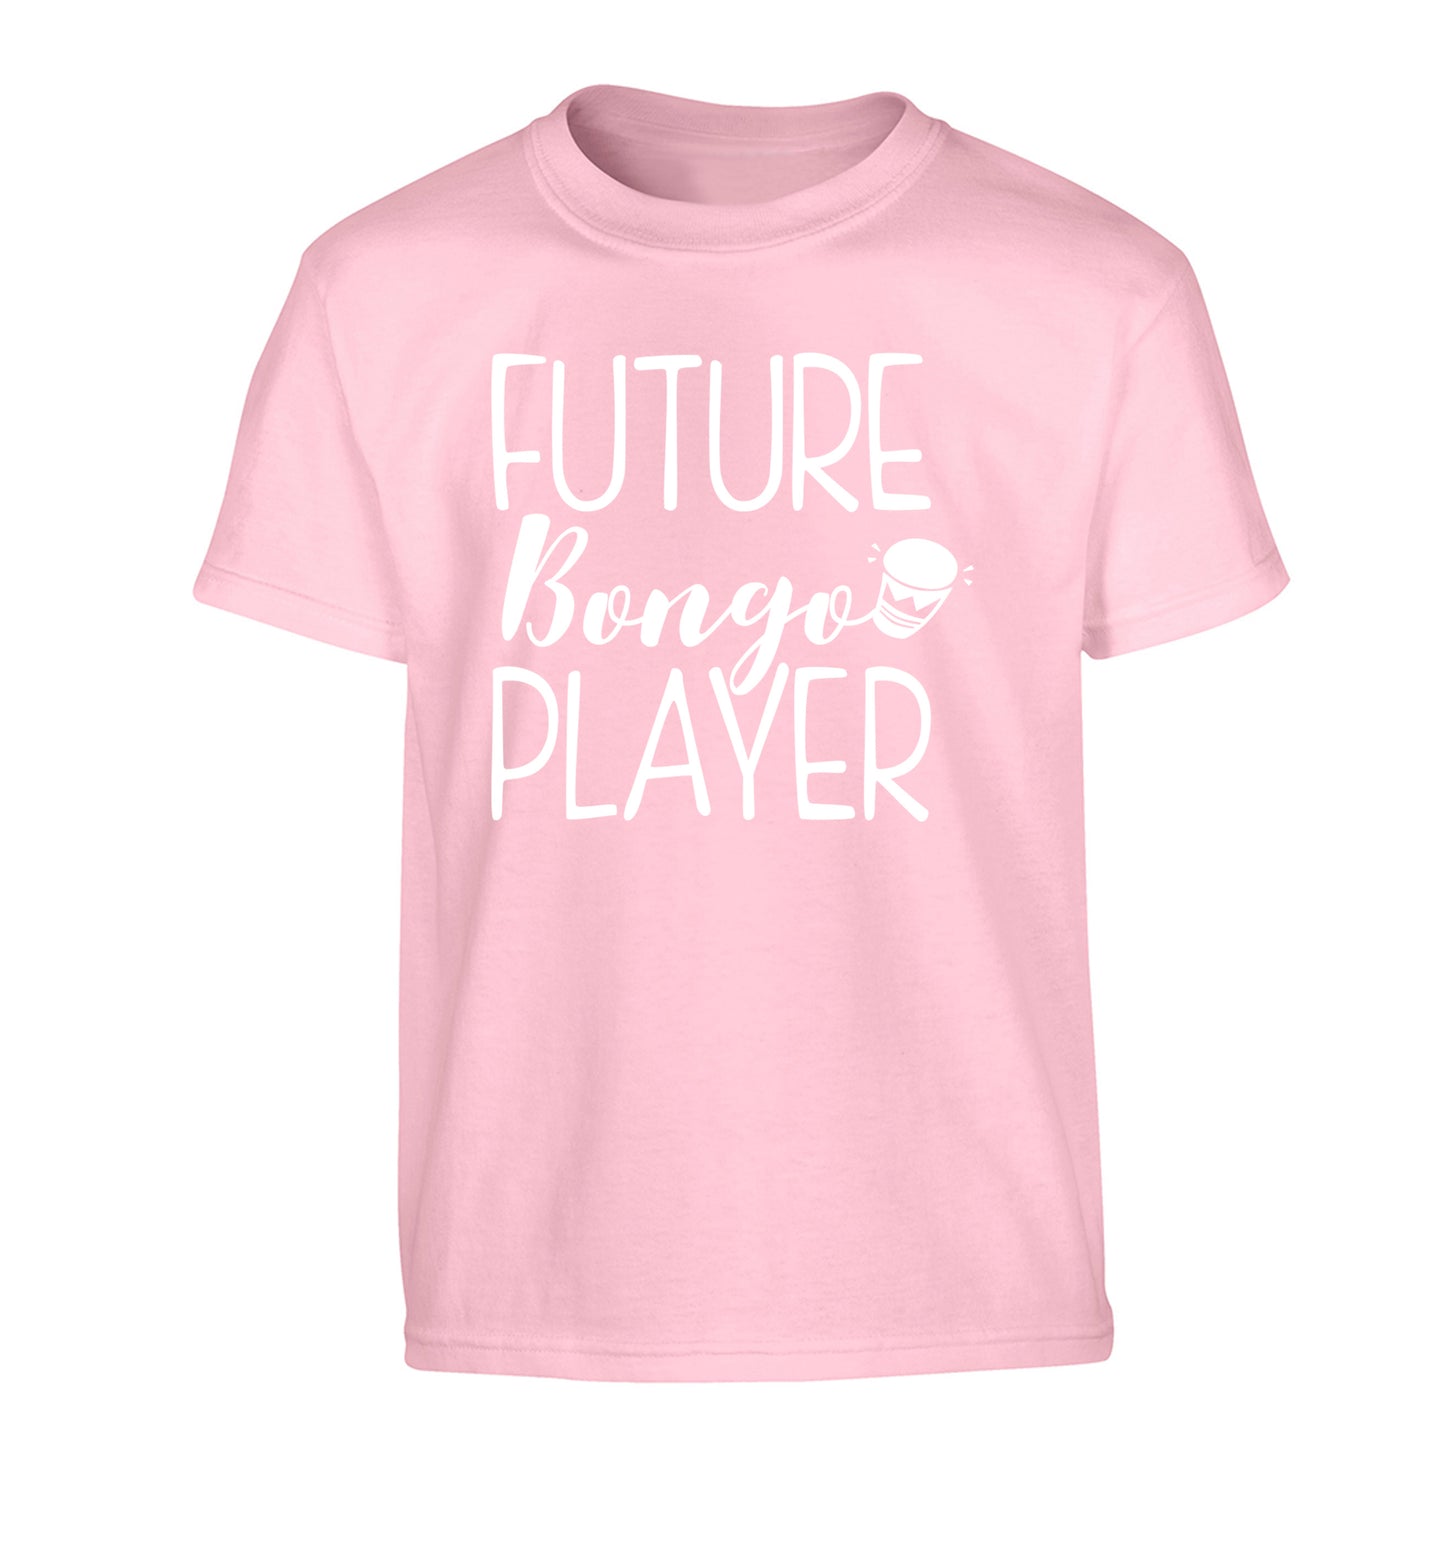 Future bongo player Children's light pink Tshirt 12-14 Years